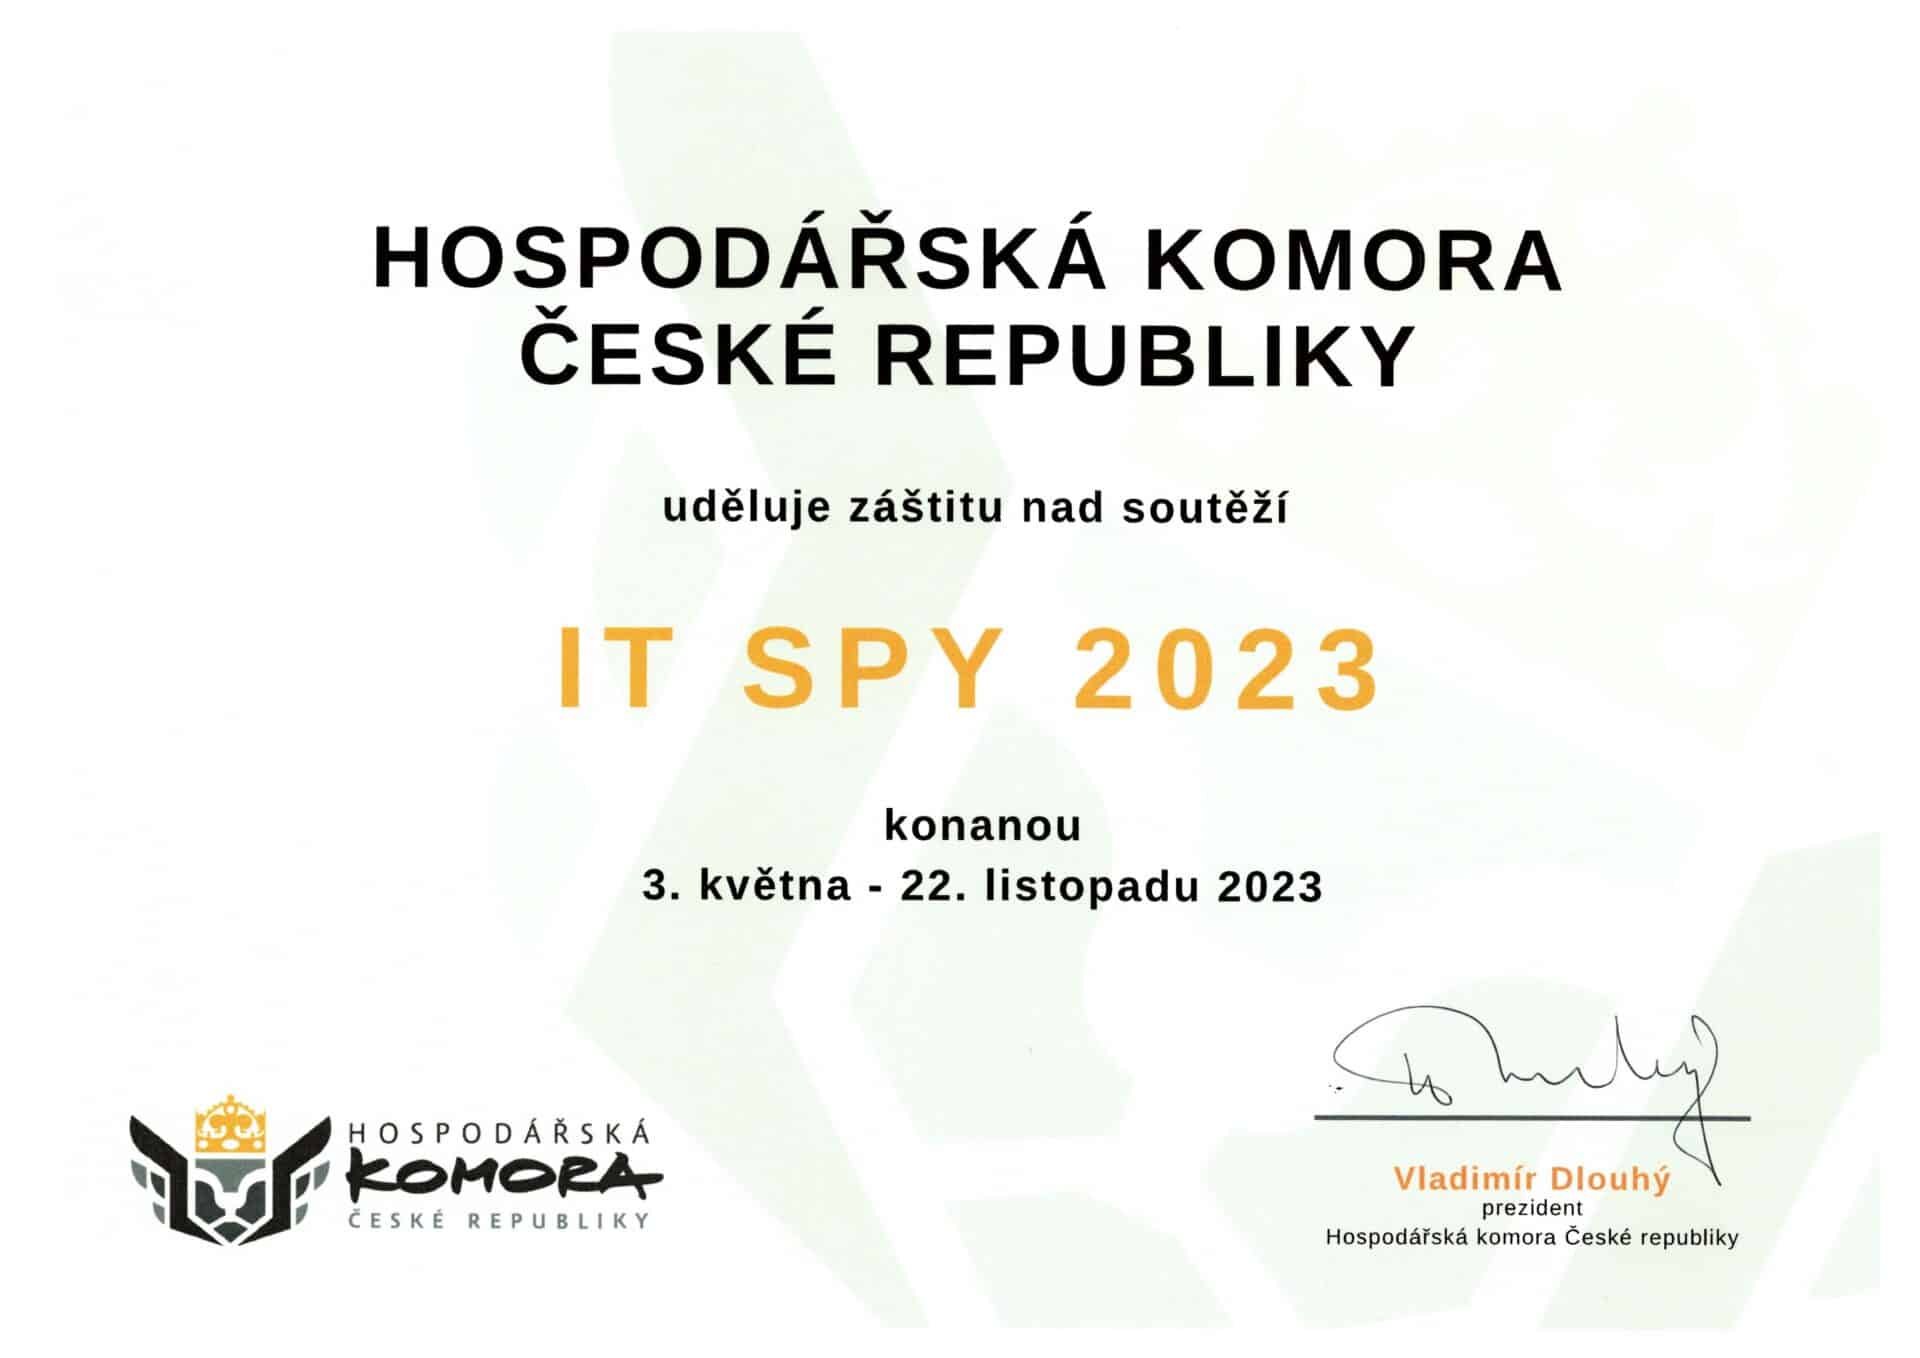 Záštita pro rok 2023 od Hospodářské komory České republiky